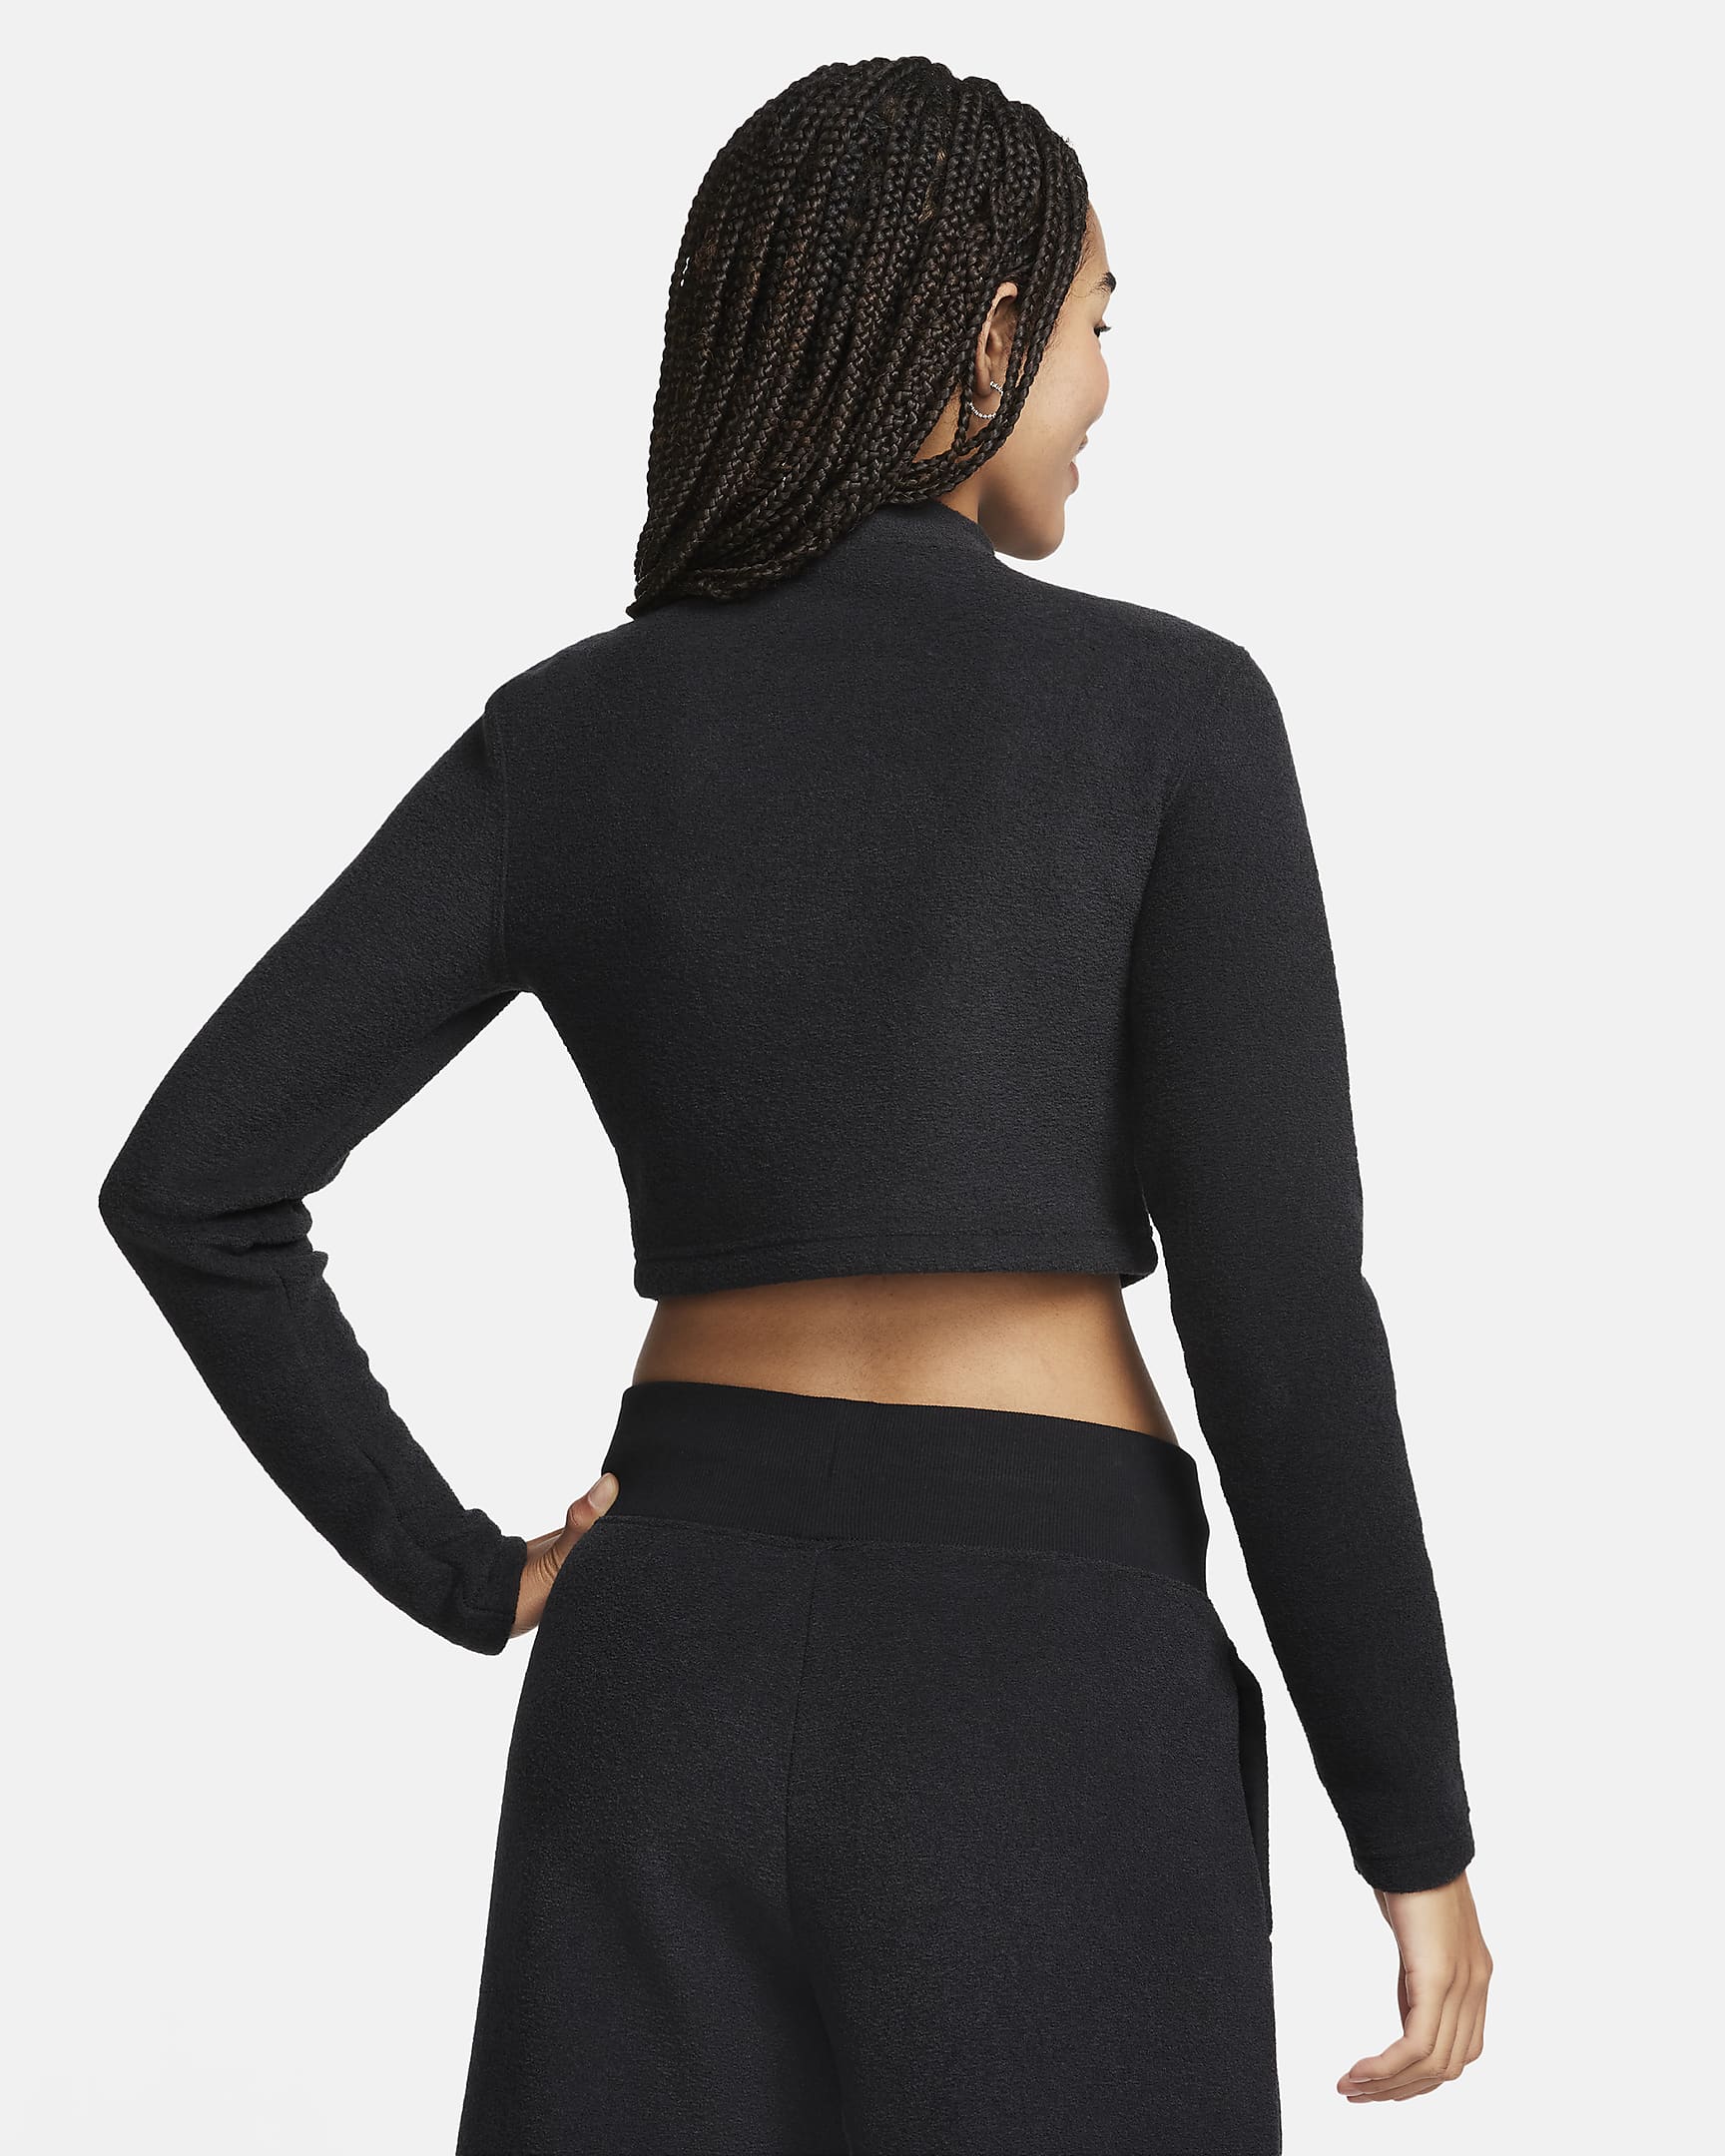 Nike Sportswear Phoenix Plush Women's Slim Mock-Neck Long-Sleeve ...